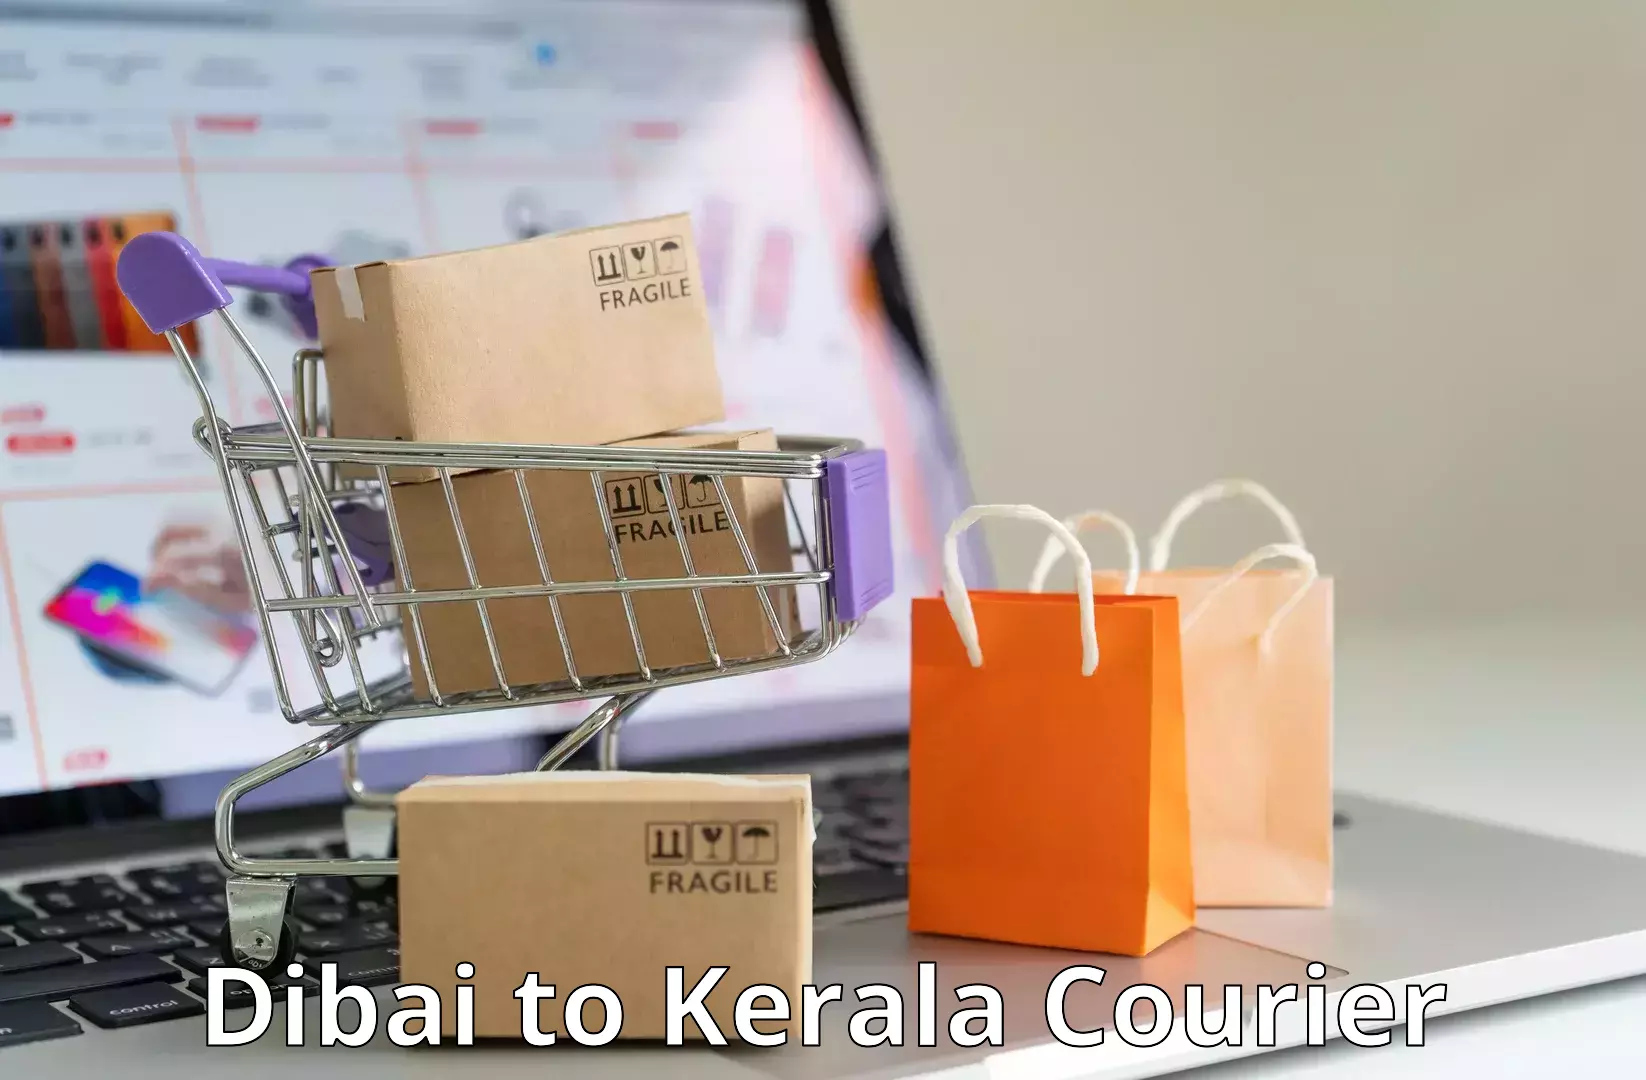 Comprehensive logistics solutions Dibai to Alappuzha